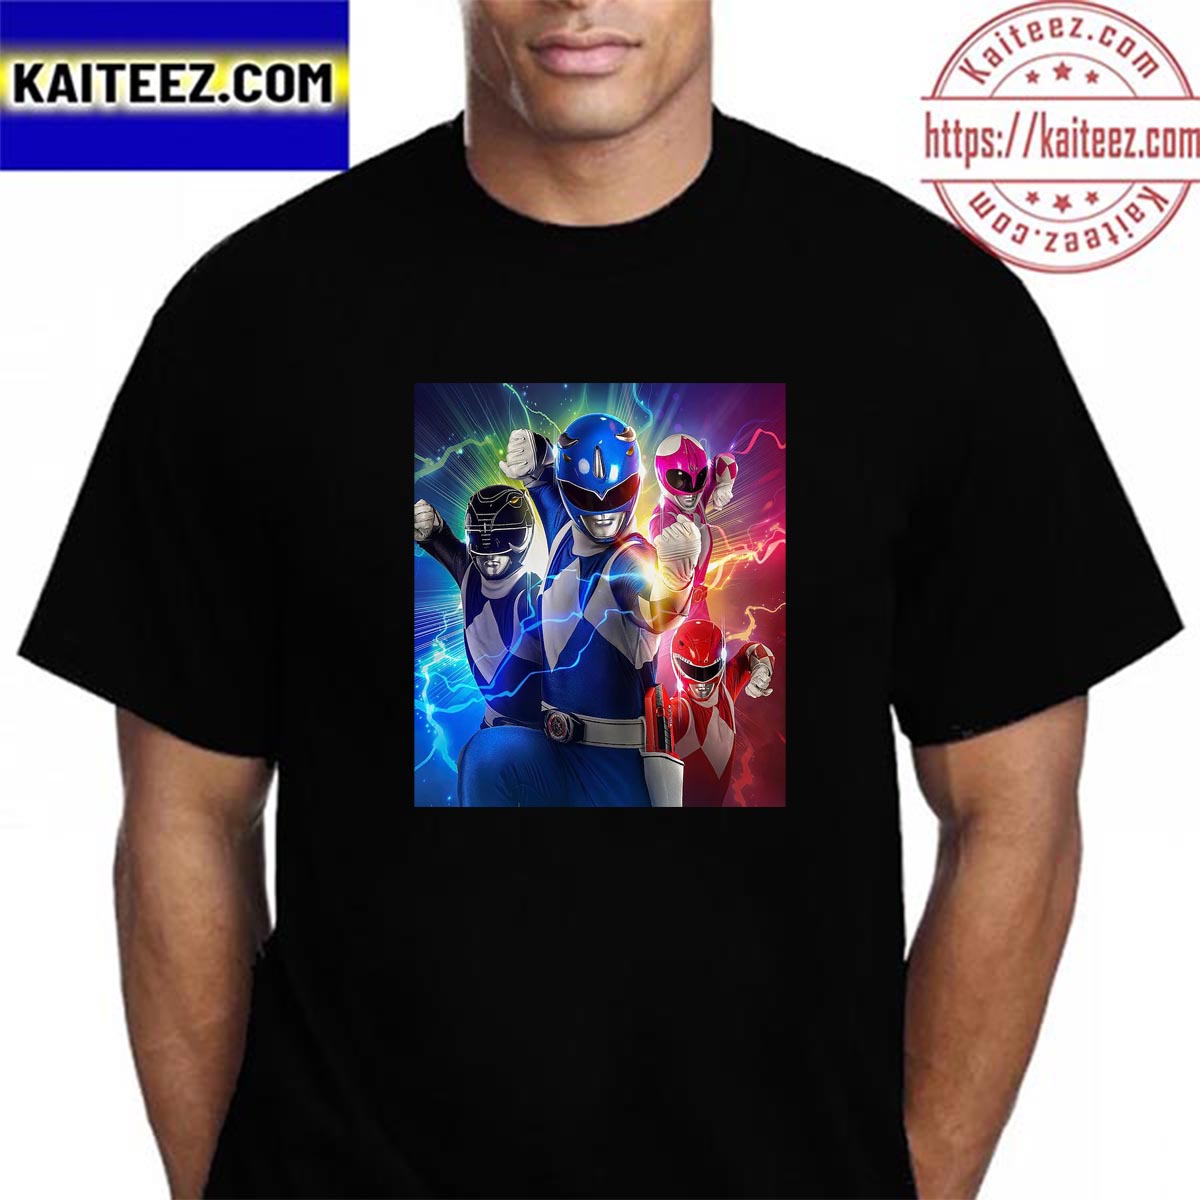 Power Rangers Shirt  Power rangers shirt, Shirts, Mens tops